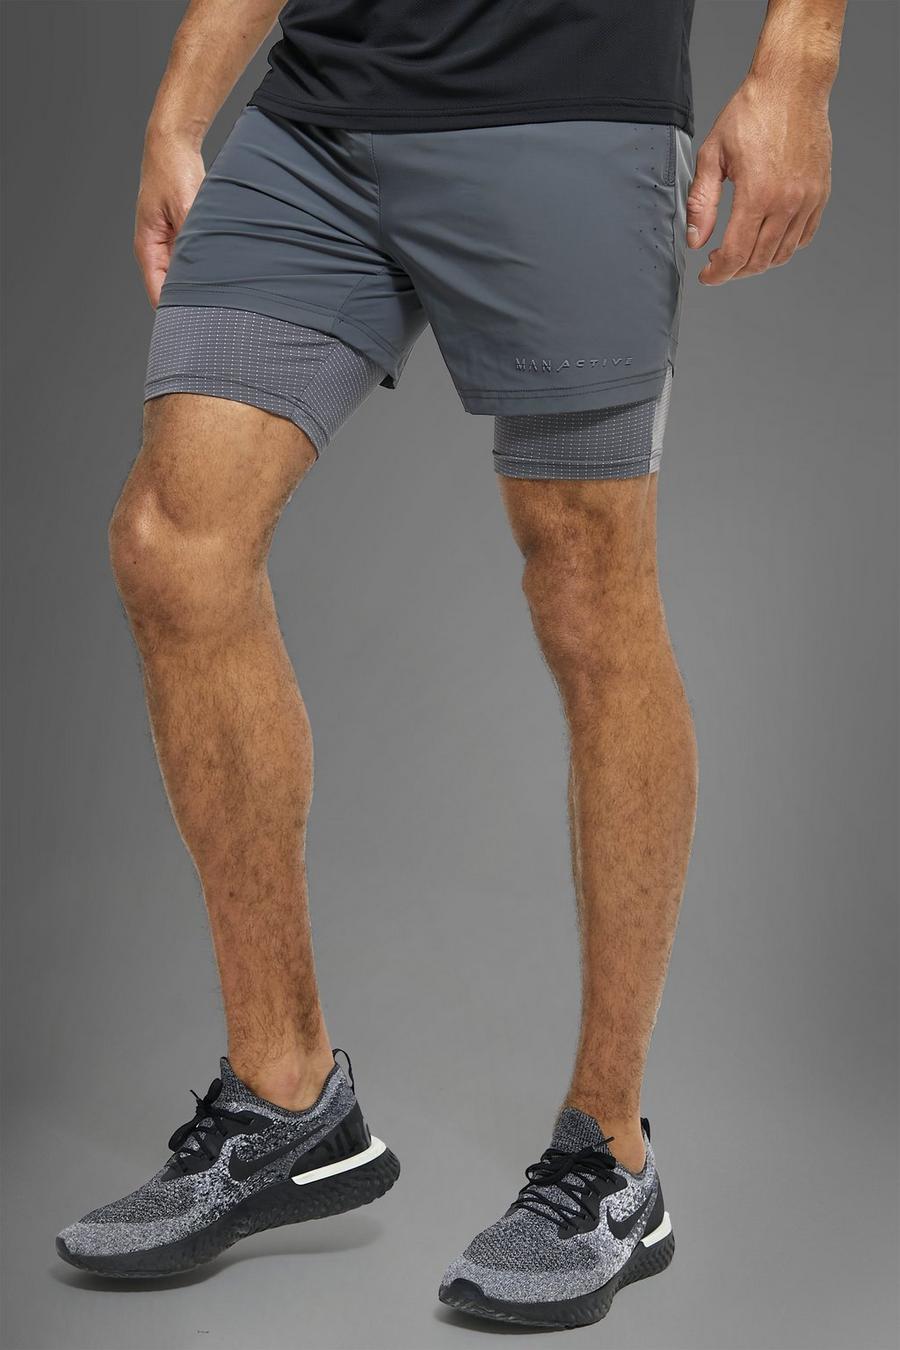 Pantalón corto MAN Active deportivo 2 en 1, Charcoal grigio